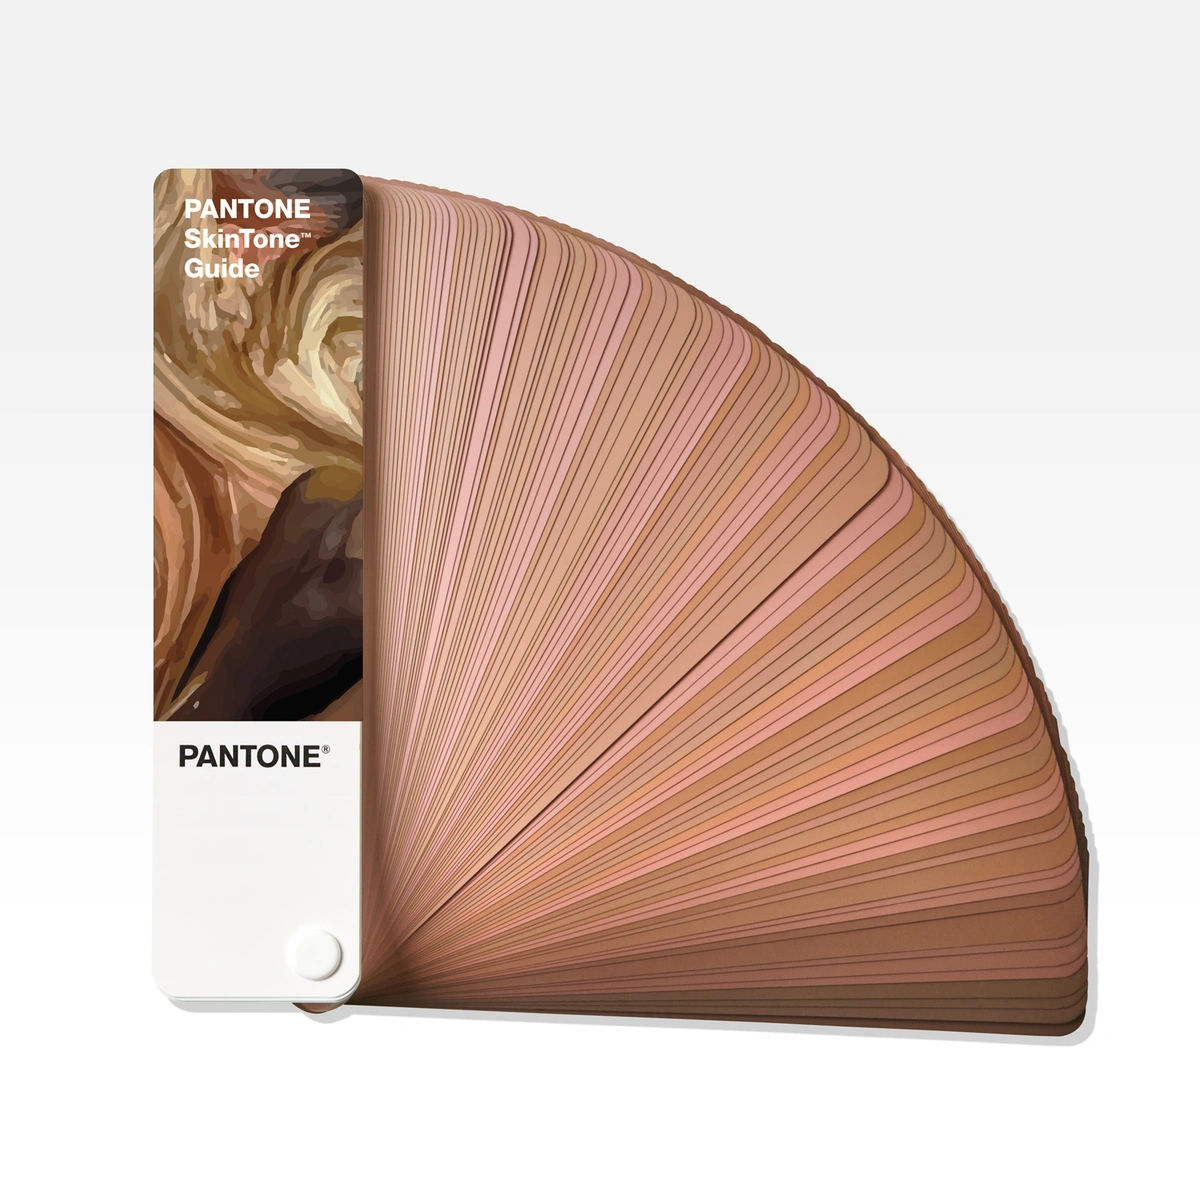 Controlul culorii / Pantone - PANTONE PLUS Skintone guide, transilvae.ro